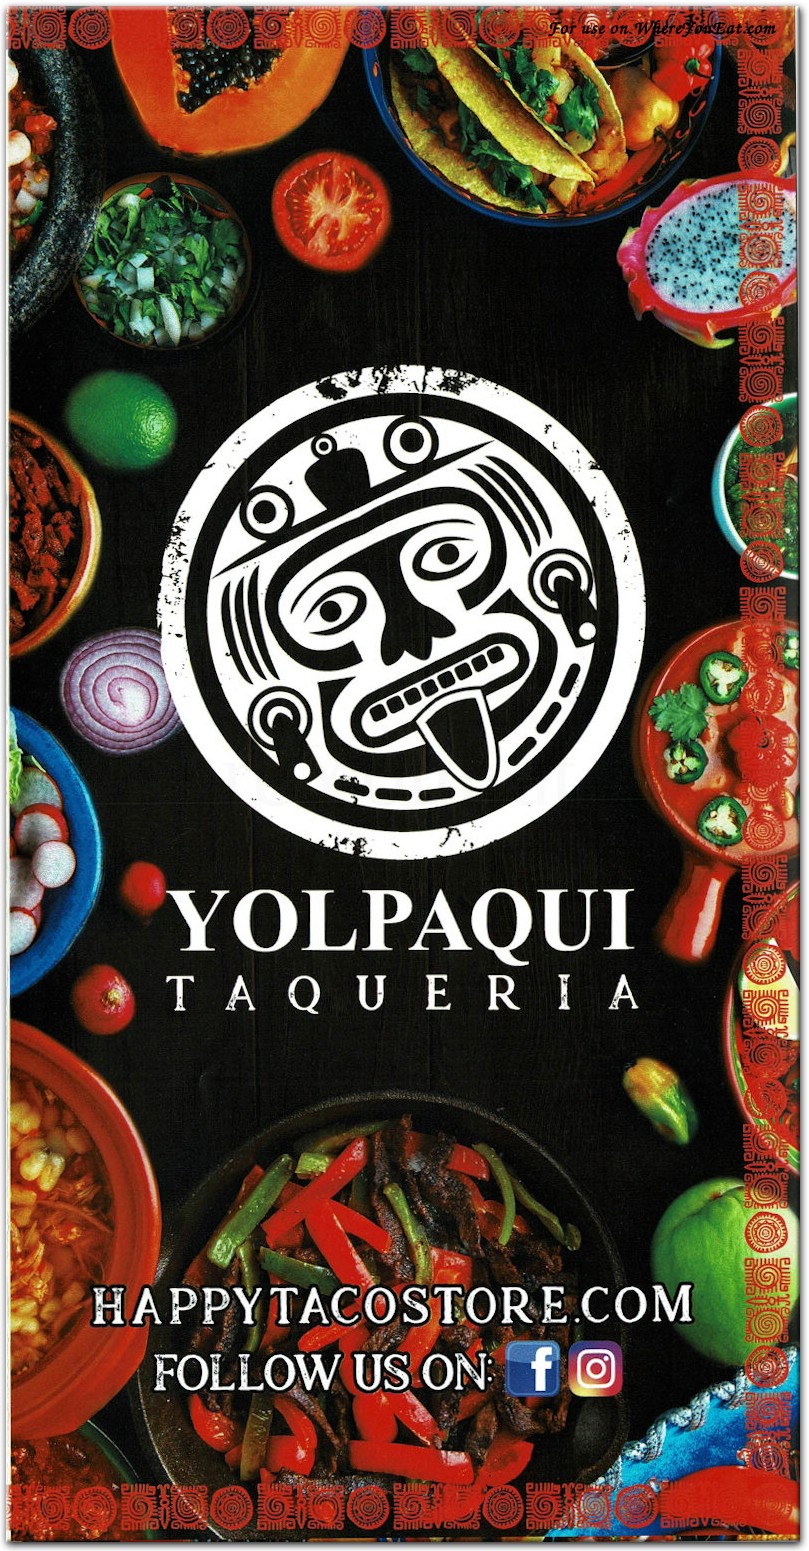 Yolpaqui Taqueria food photos